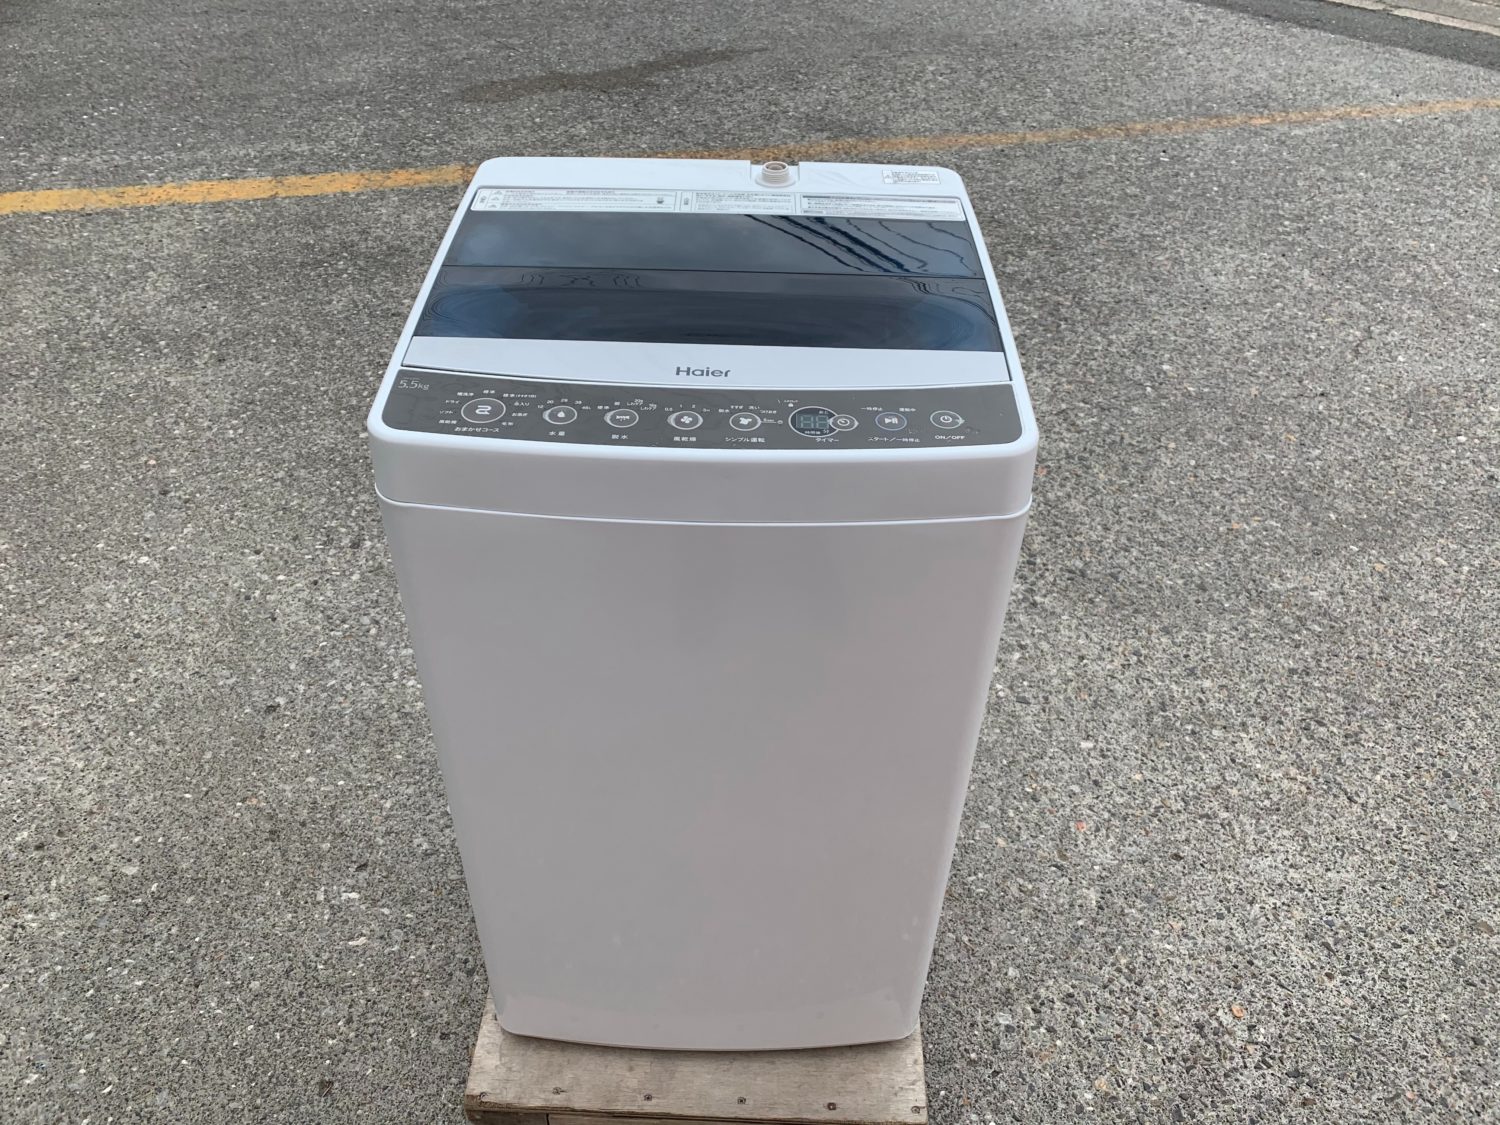 ハイアール 5.5kg 洗濯機 JW-C55Aの分解と洗濯槽の掃除方法